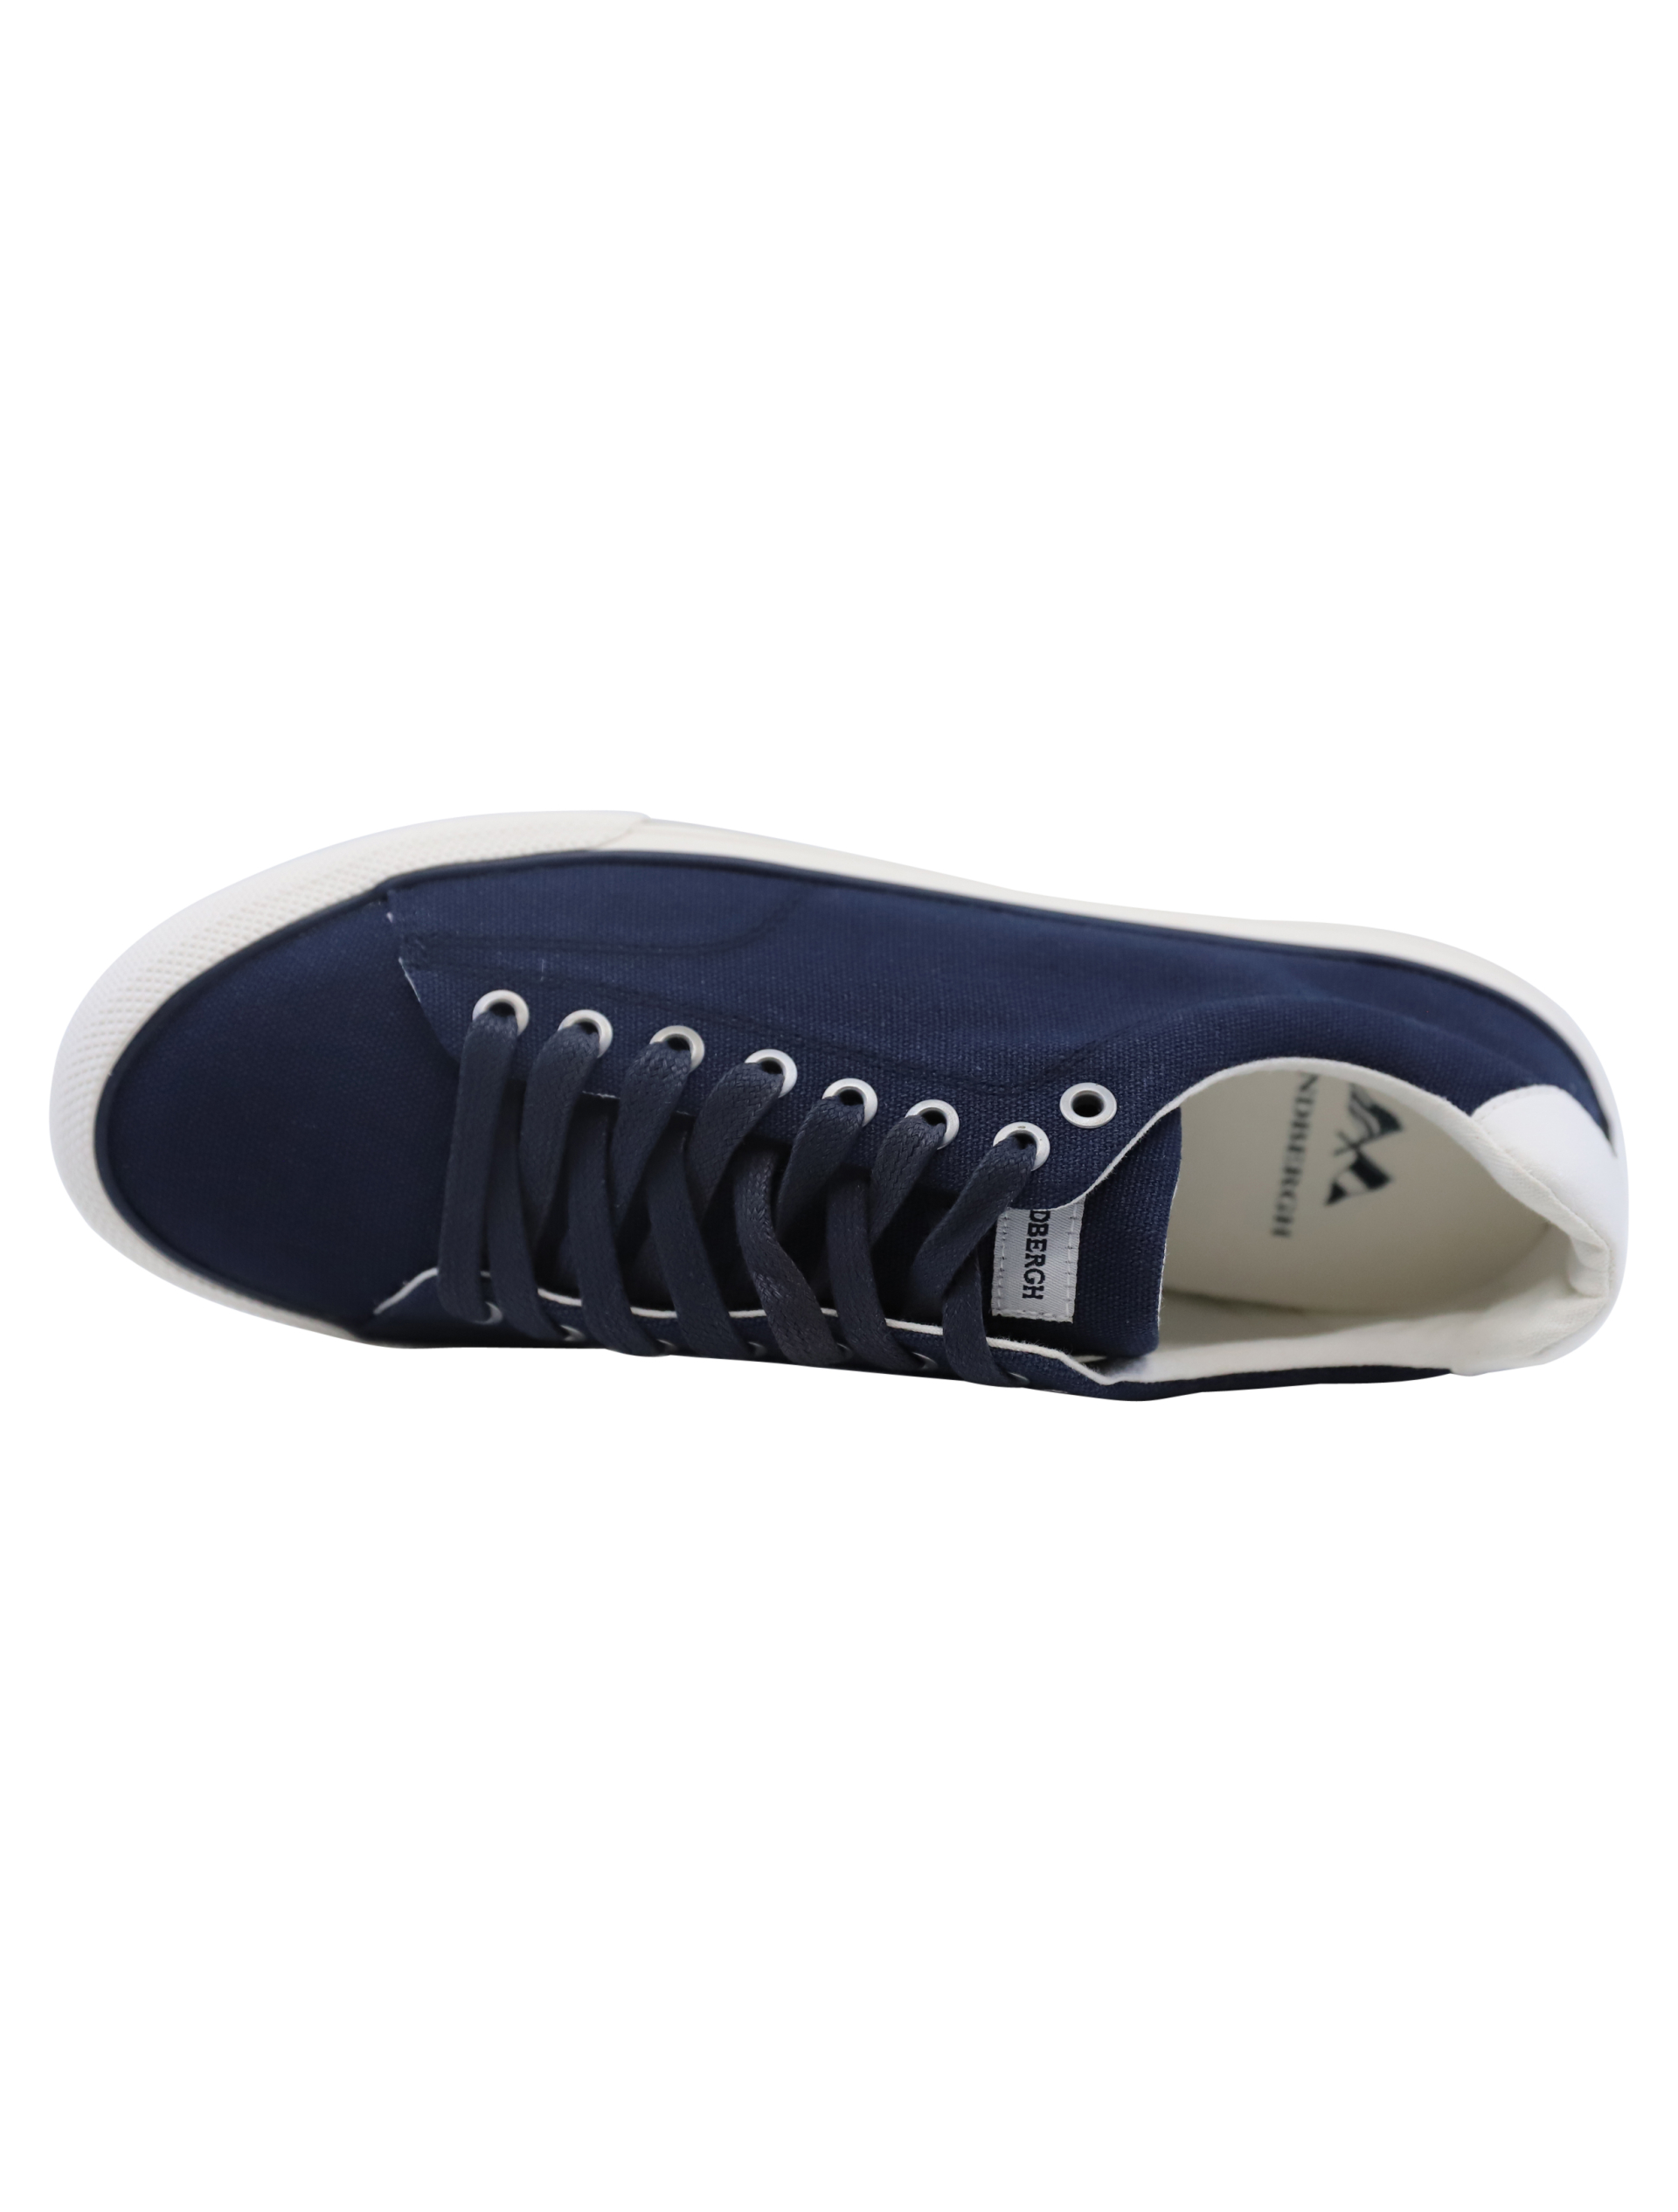 Lindbergh Sneakers blau / navy